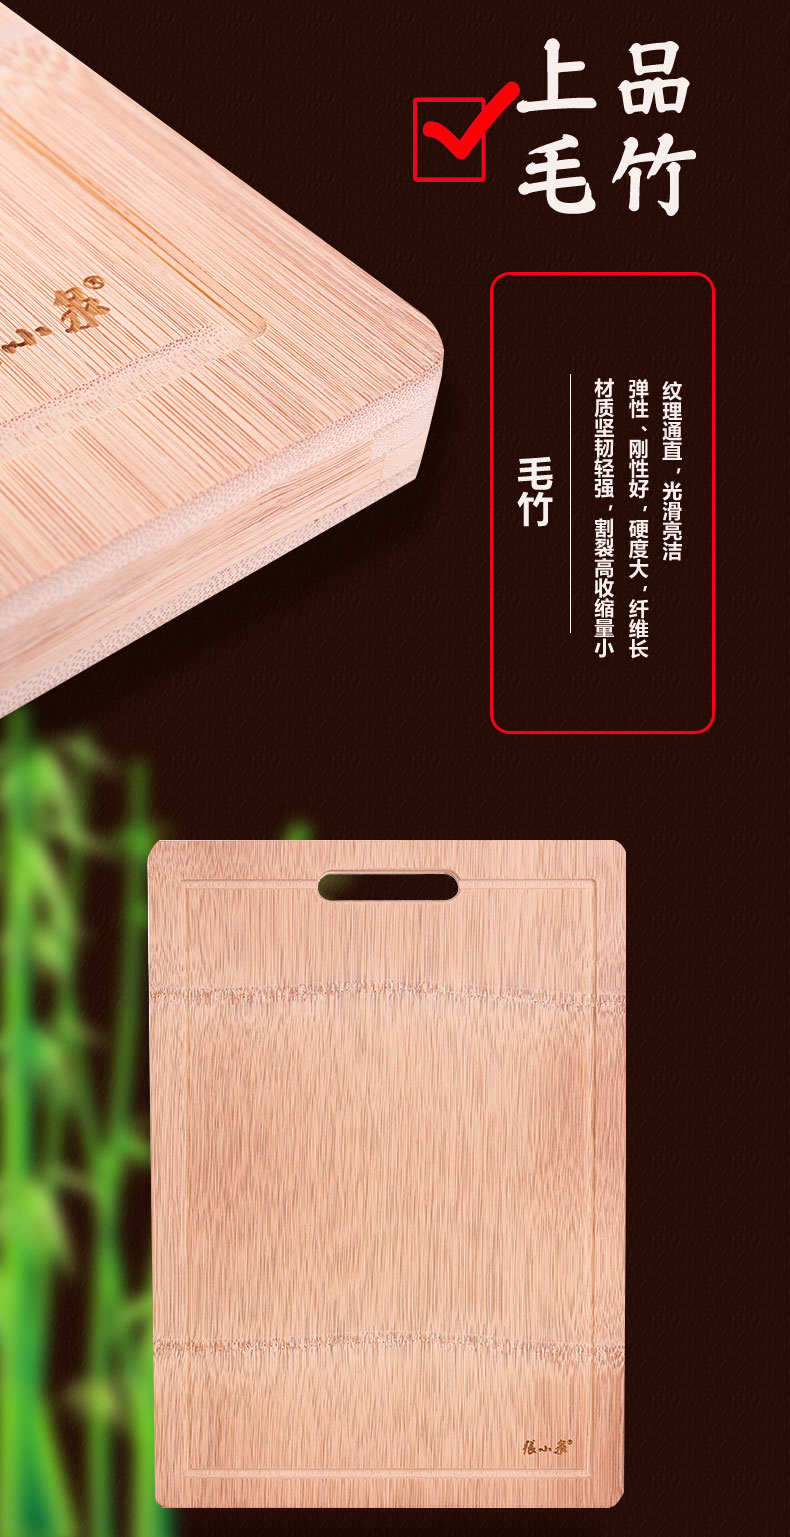 张小泉本真菜板环保整竹竹案板 水槽款厨房切菜砧板包邮